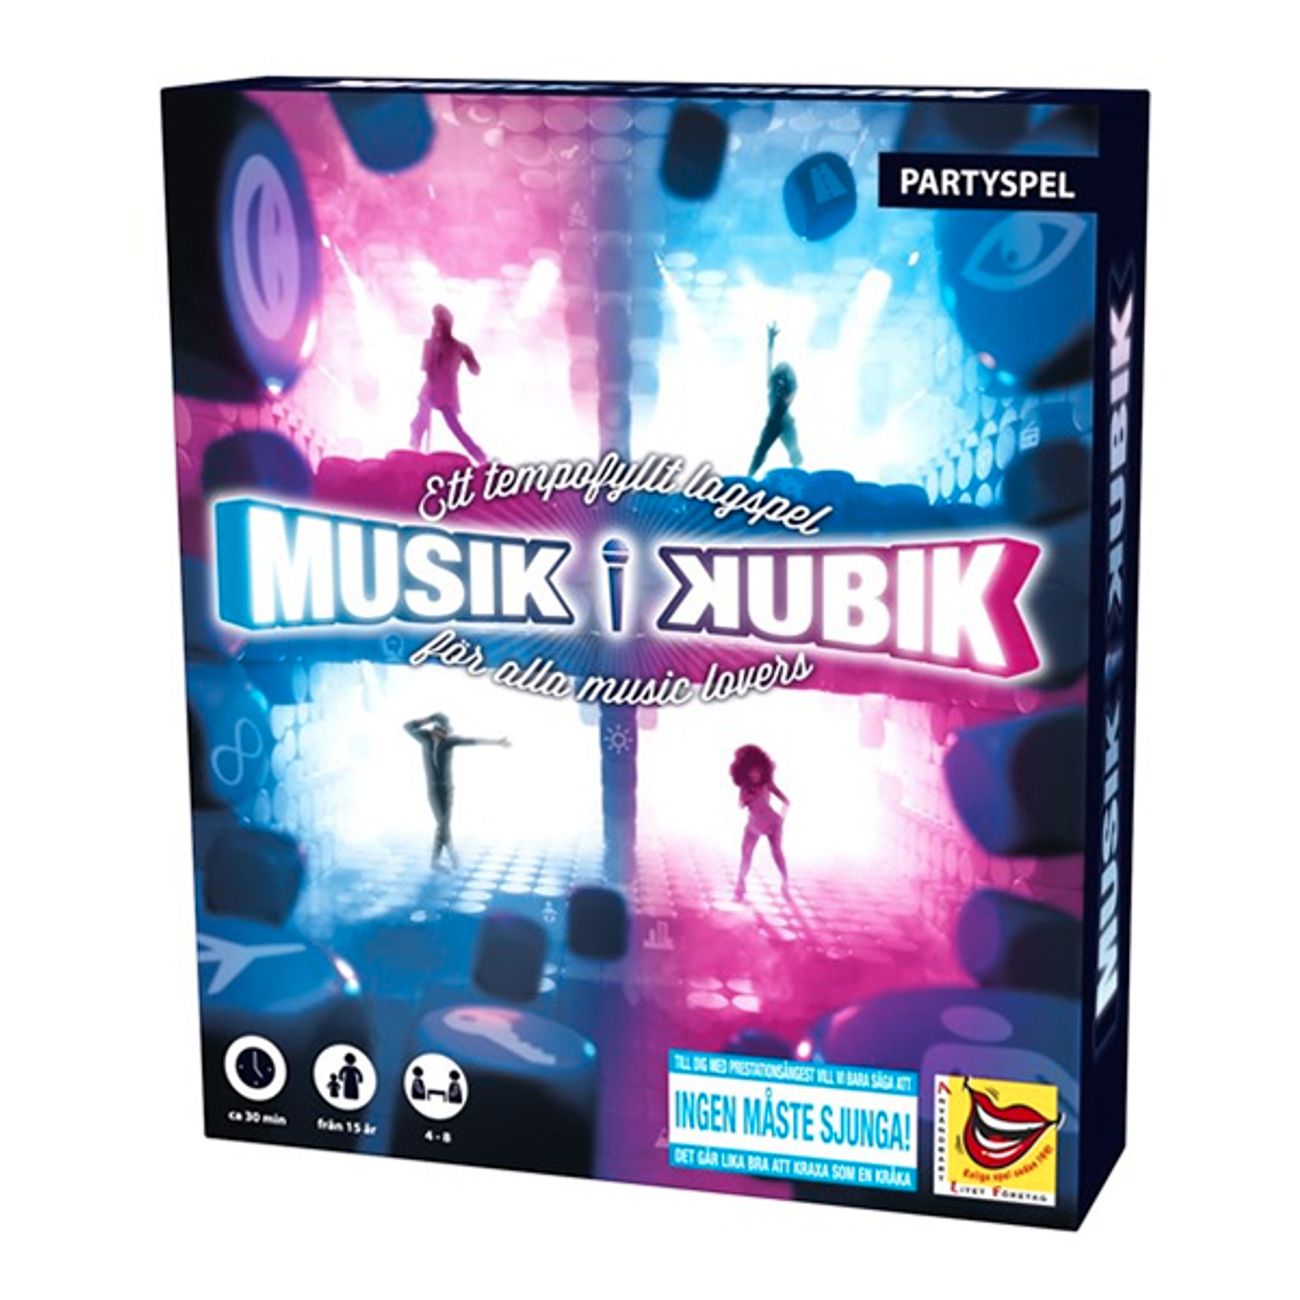 musik-i-kubik-partyspel-1